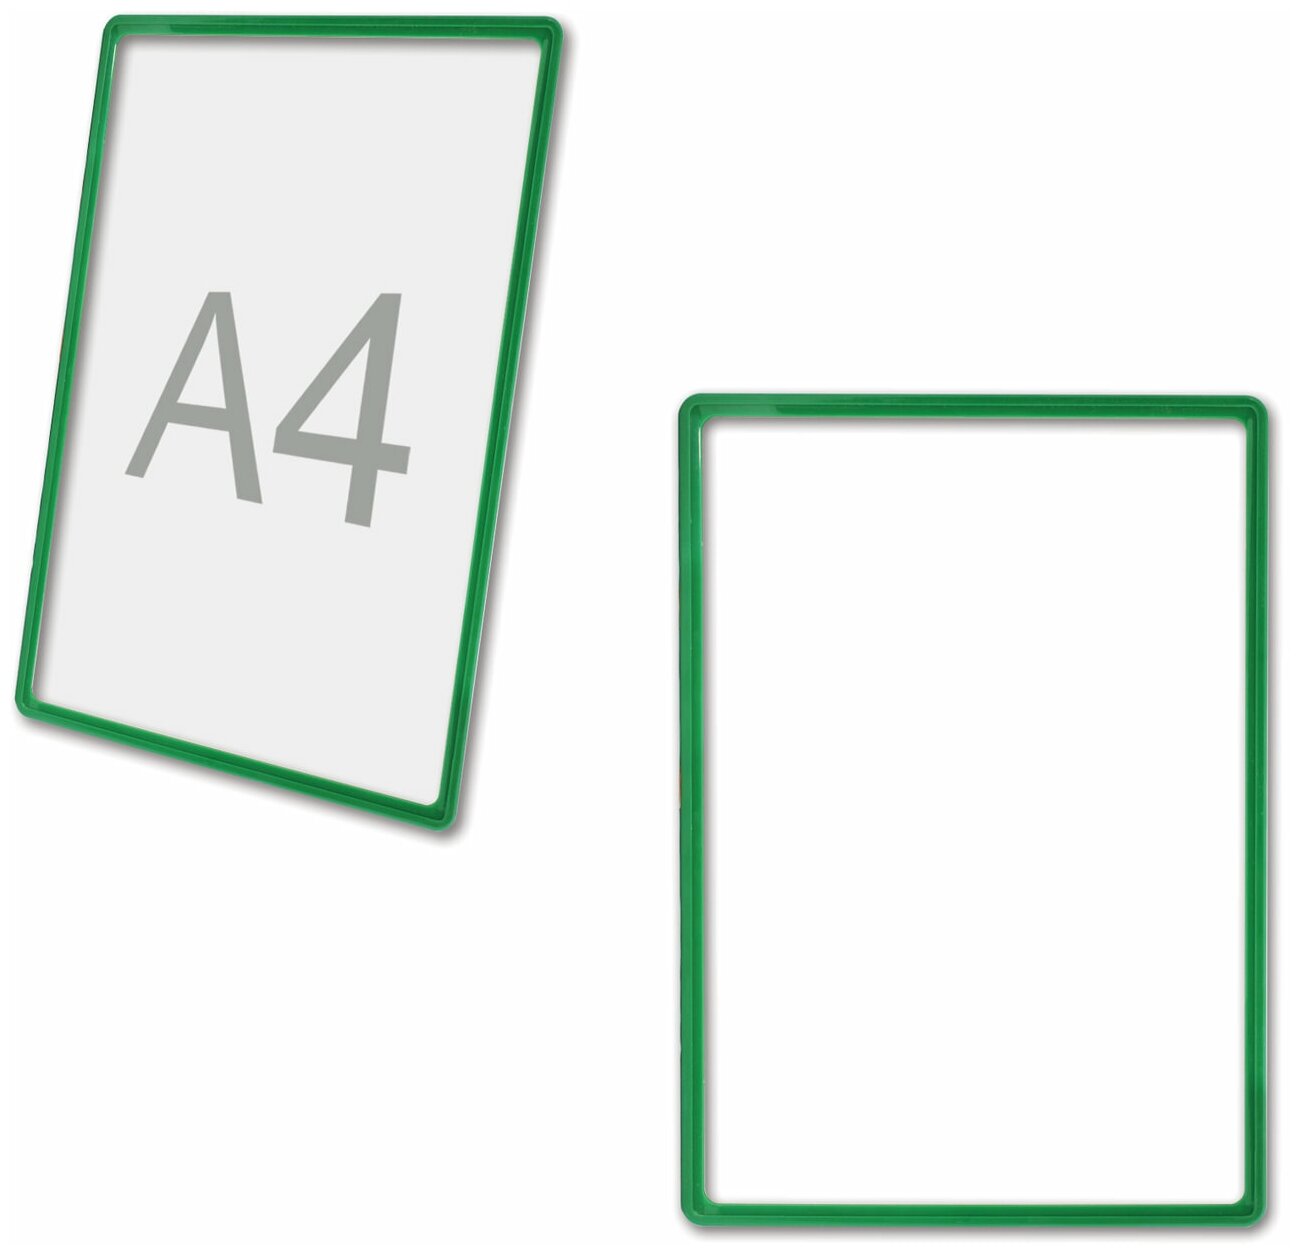 Рамка POS для ценников, рекламы и объявлений А4, зеленая, без защитного экрана, 290253